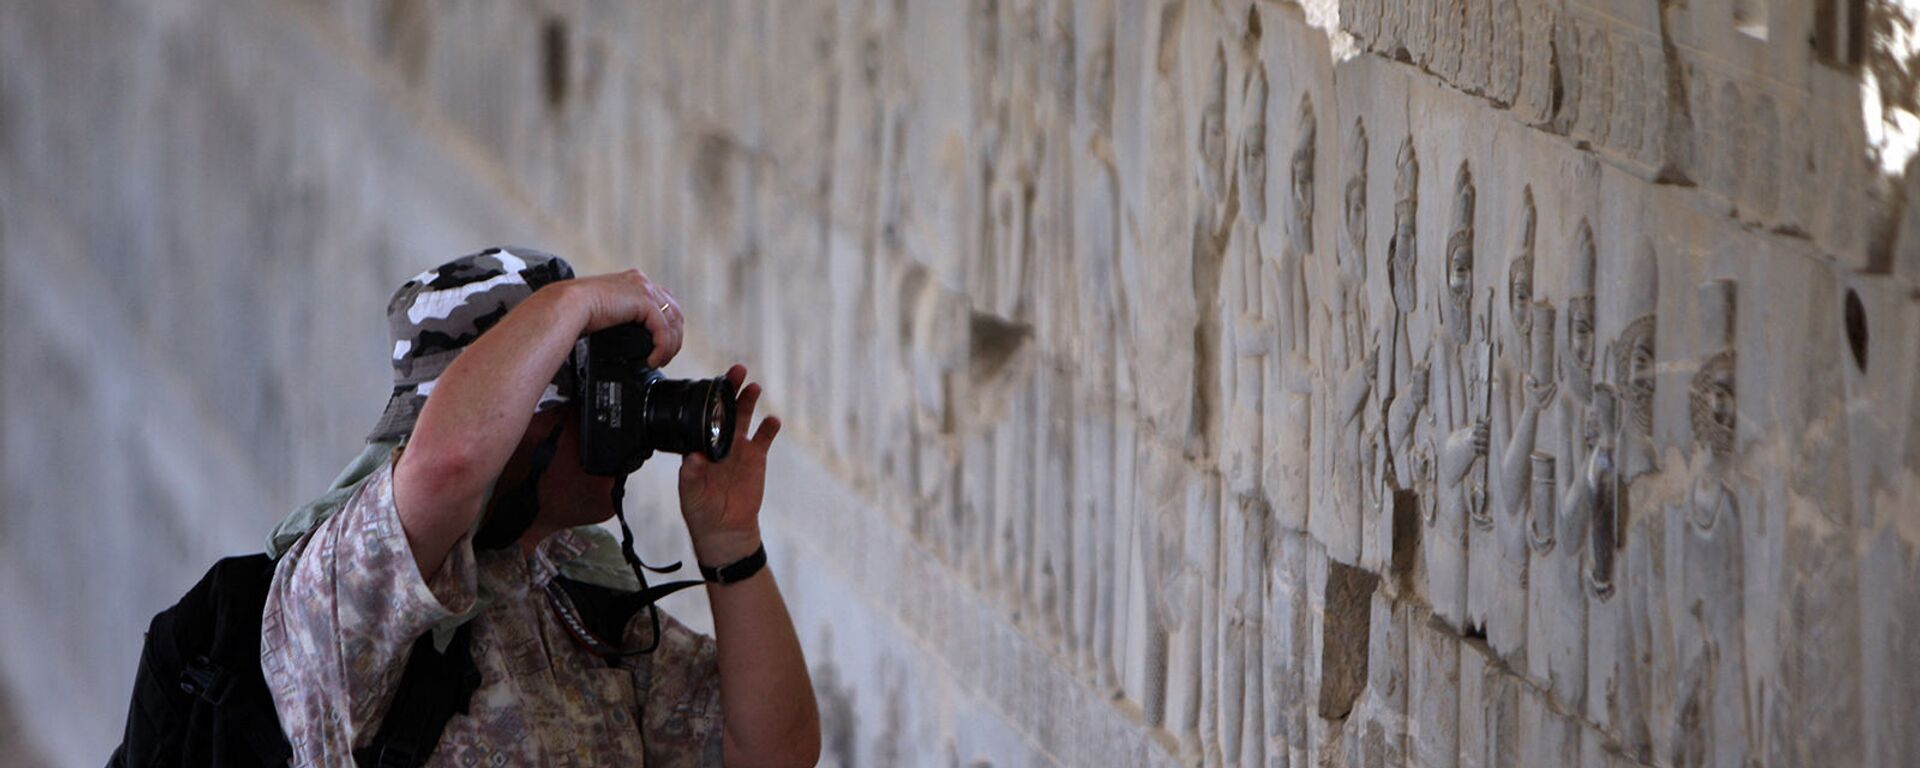 Турист фотографирует во время экскурсии по древнему имперскому городу Персеполис, столице персидской династии Археменидов - Sputnik Армения, 1920, 17.08.2021